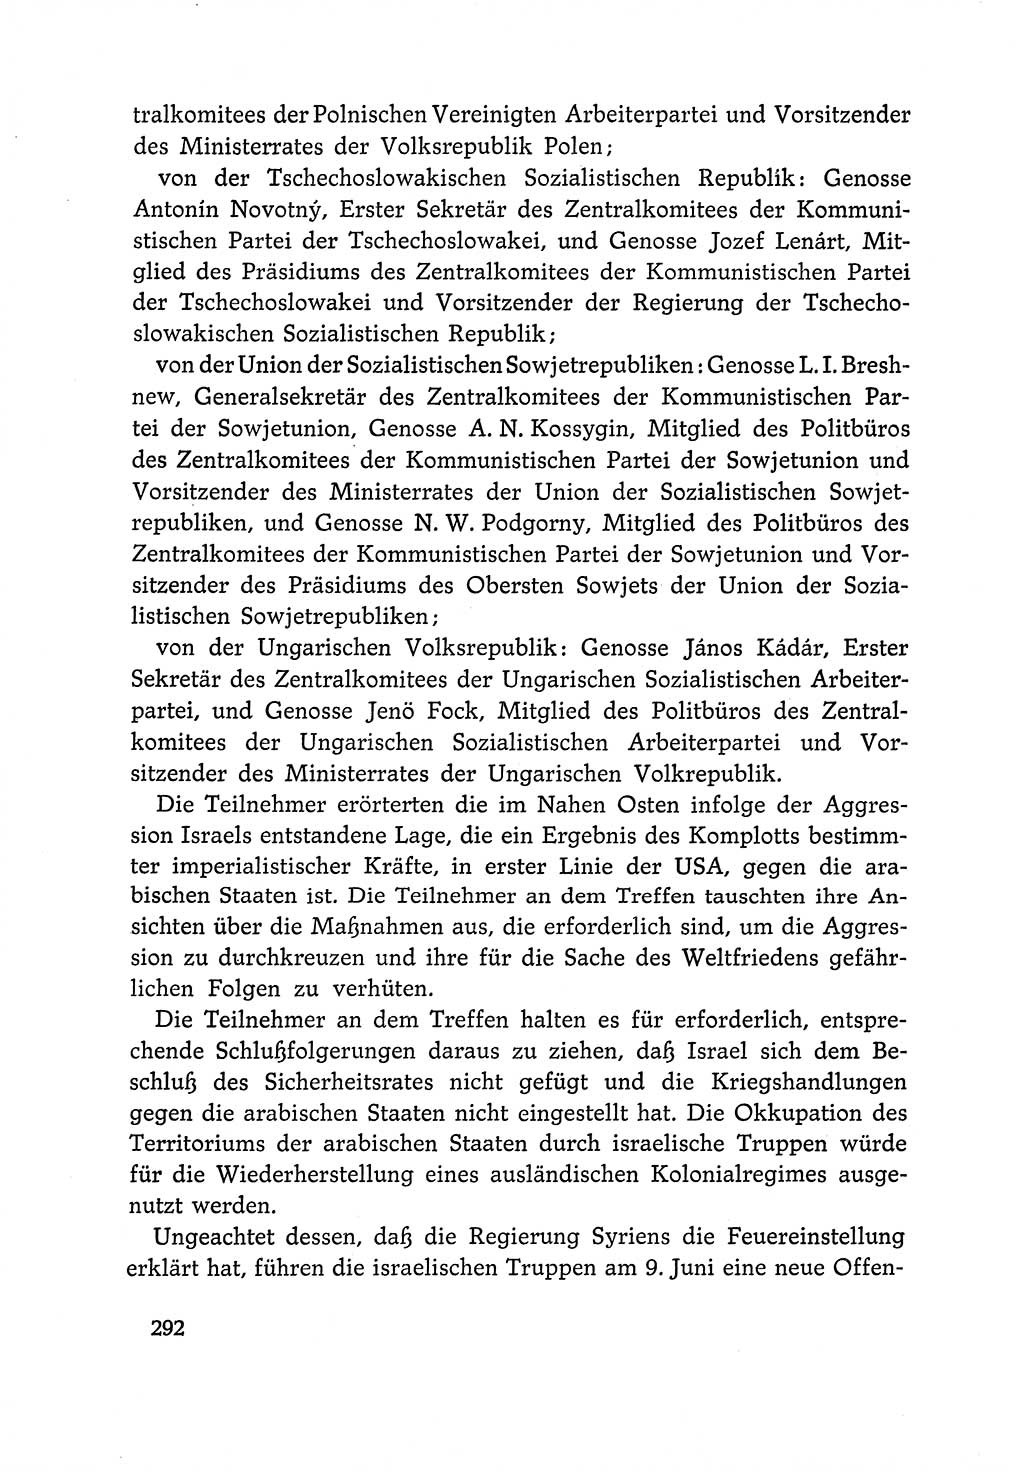 Dokumente der Sozialistischen Einheitspartei Deutschlands (SED) [Deutsche Demokratische Republik (DDR)] 1966-1967, Seite 292 (Dok. SED DDR 1966-1967, S. 292)